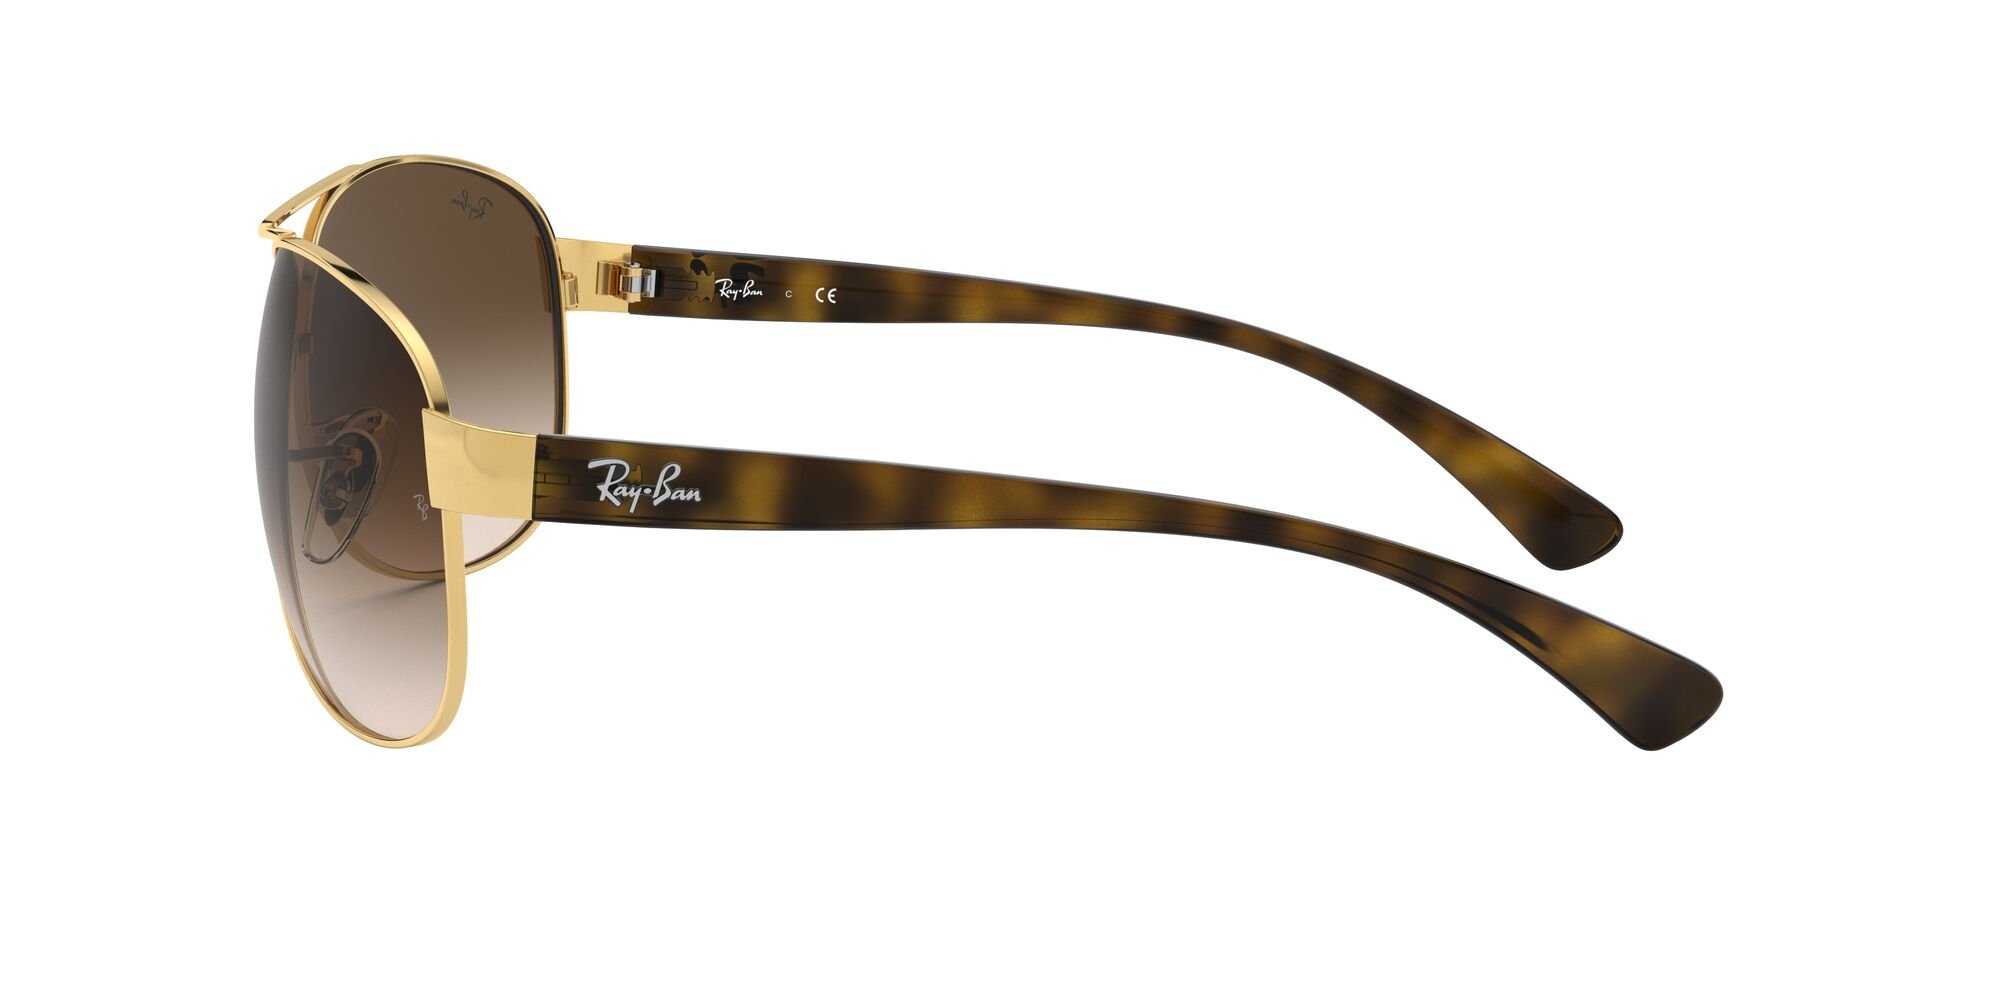 Das Bild zeigt die Sonnenbrille RB3386 001/13 von der Marke Ray-Ban in gold/braun.